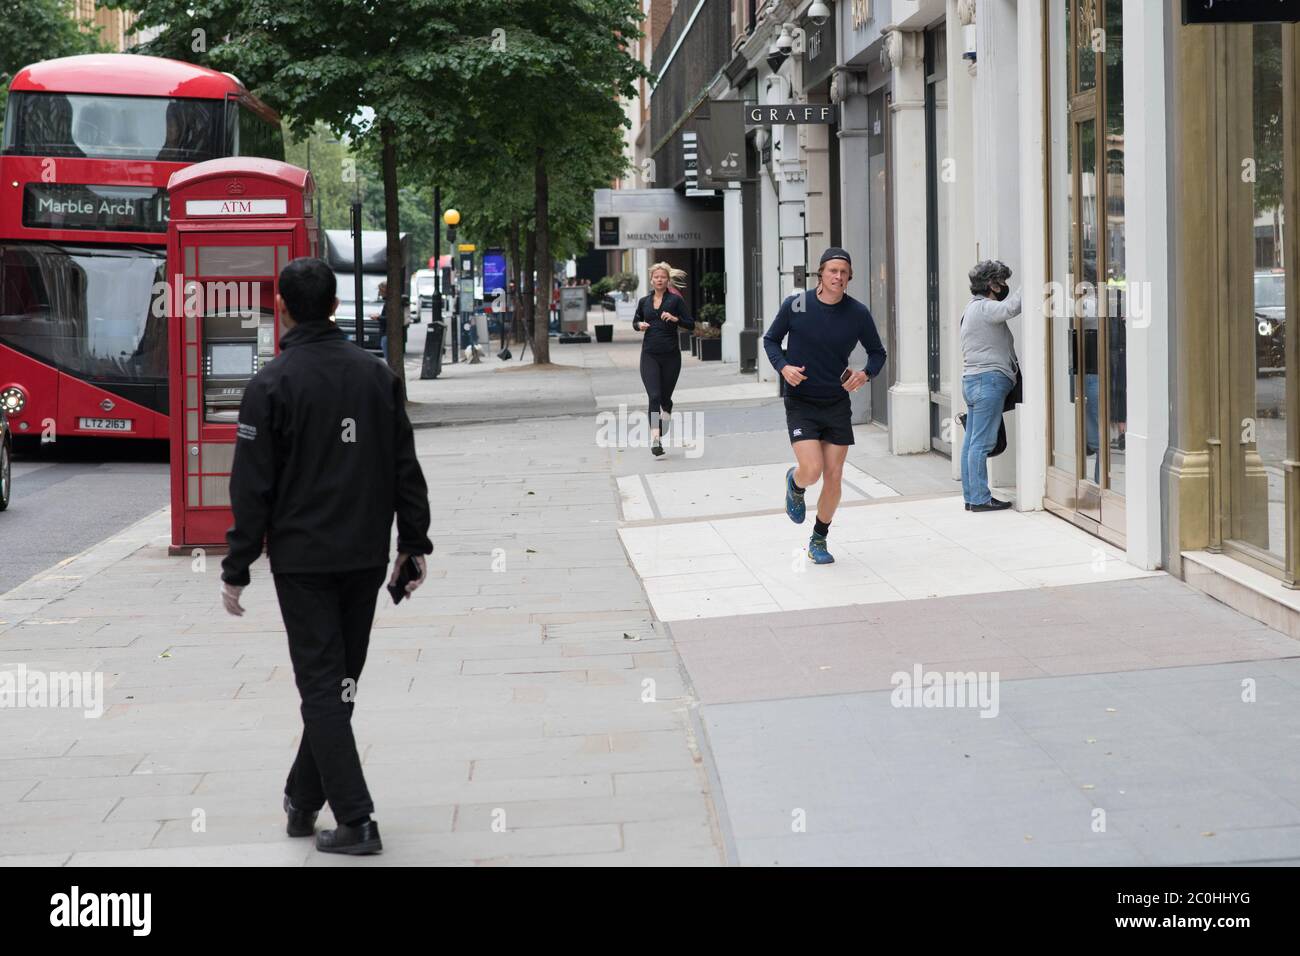 Besucher von Knightsbridge im Westen Londons gehen durch die leeren Straßen, während sich die Geschäfte darauf vorbereiten, ihre Türen am Montag, den 15. Juni, nach der Einführung von Maßnahmen zur Lockerung Englands zu öffnen. Händler bereiten sich auf die Wiedereröffnung von Geschäften vor, die erst seit Beginn der Sperrung im März online handeln dürfen. Stockfoto